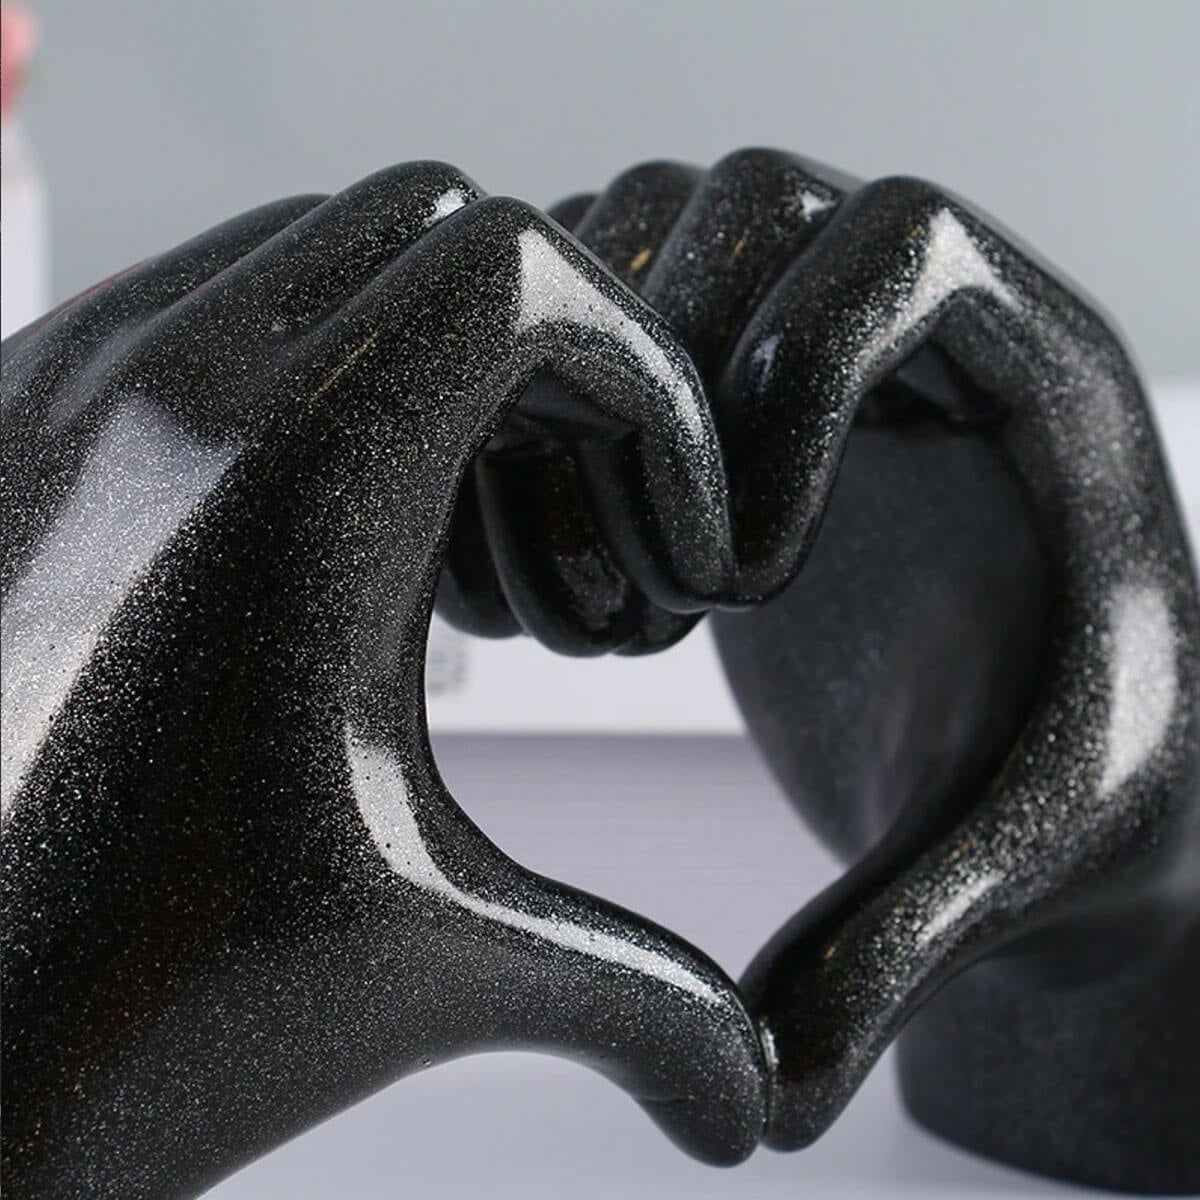 Hands Show Love Abstract Heart Sculpture